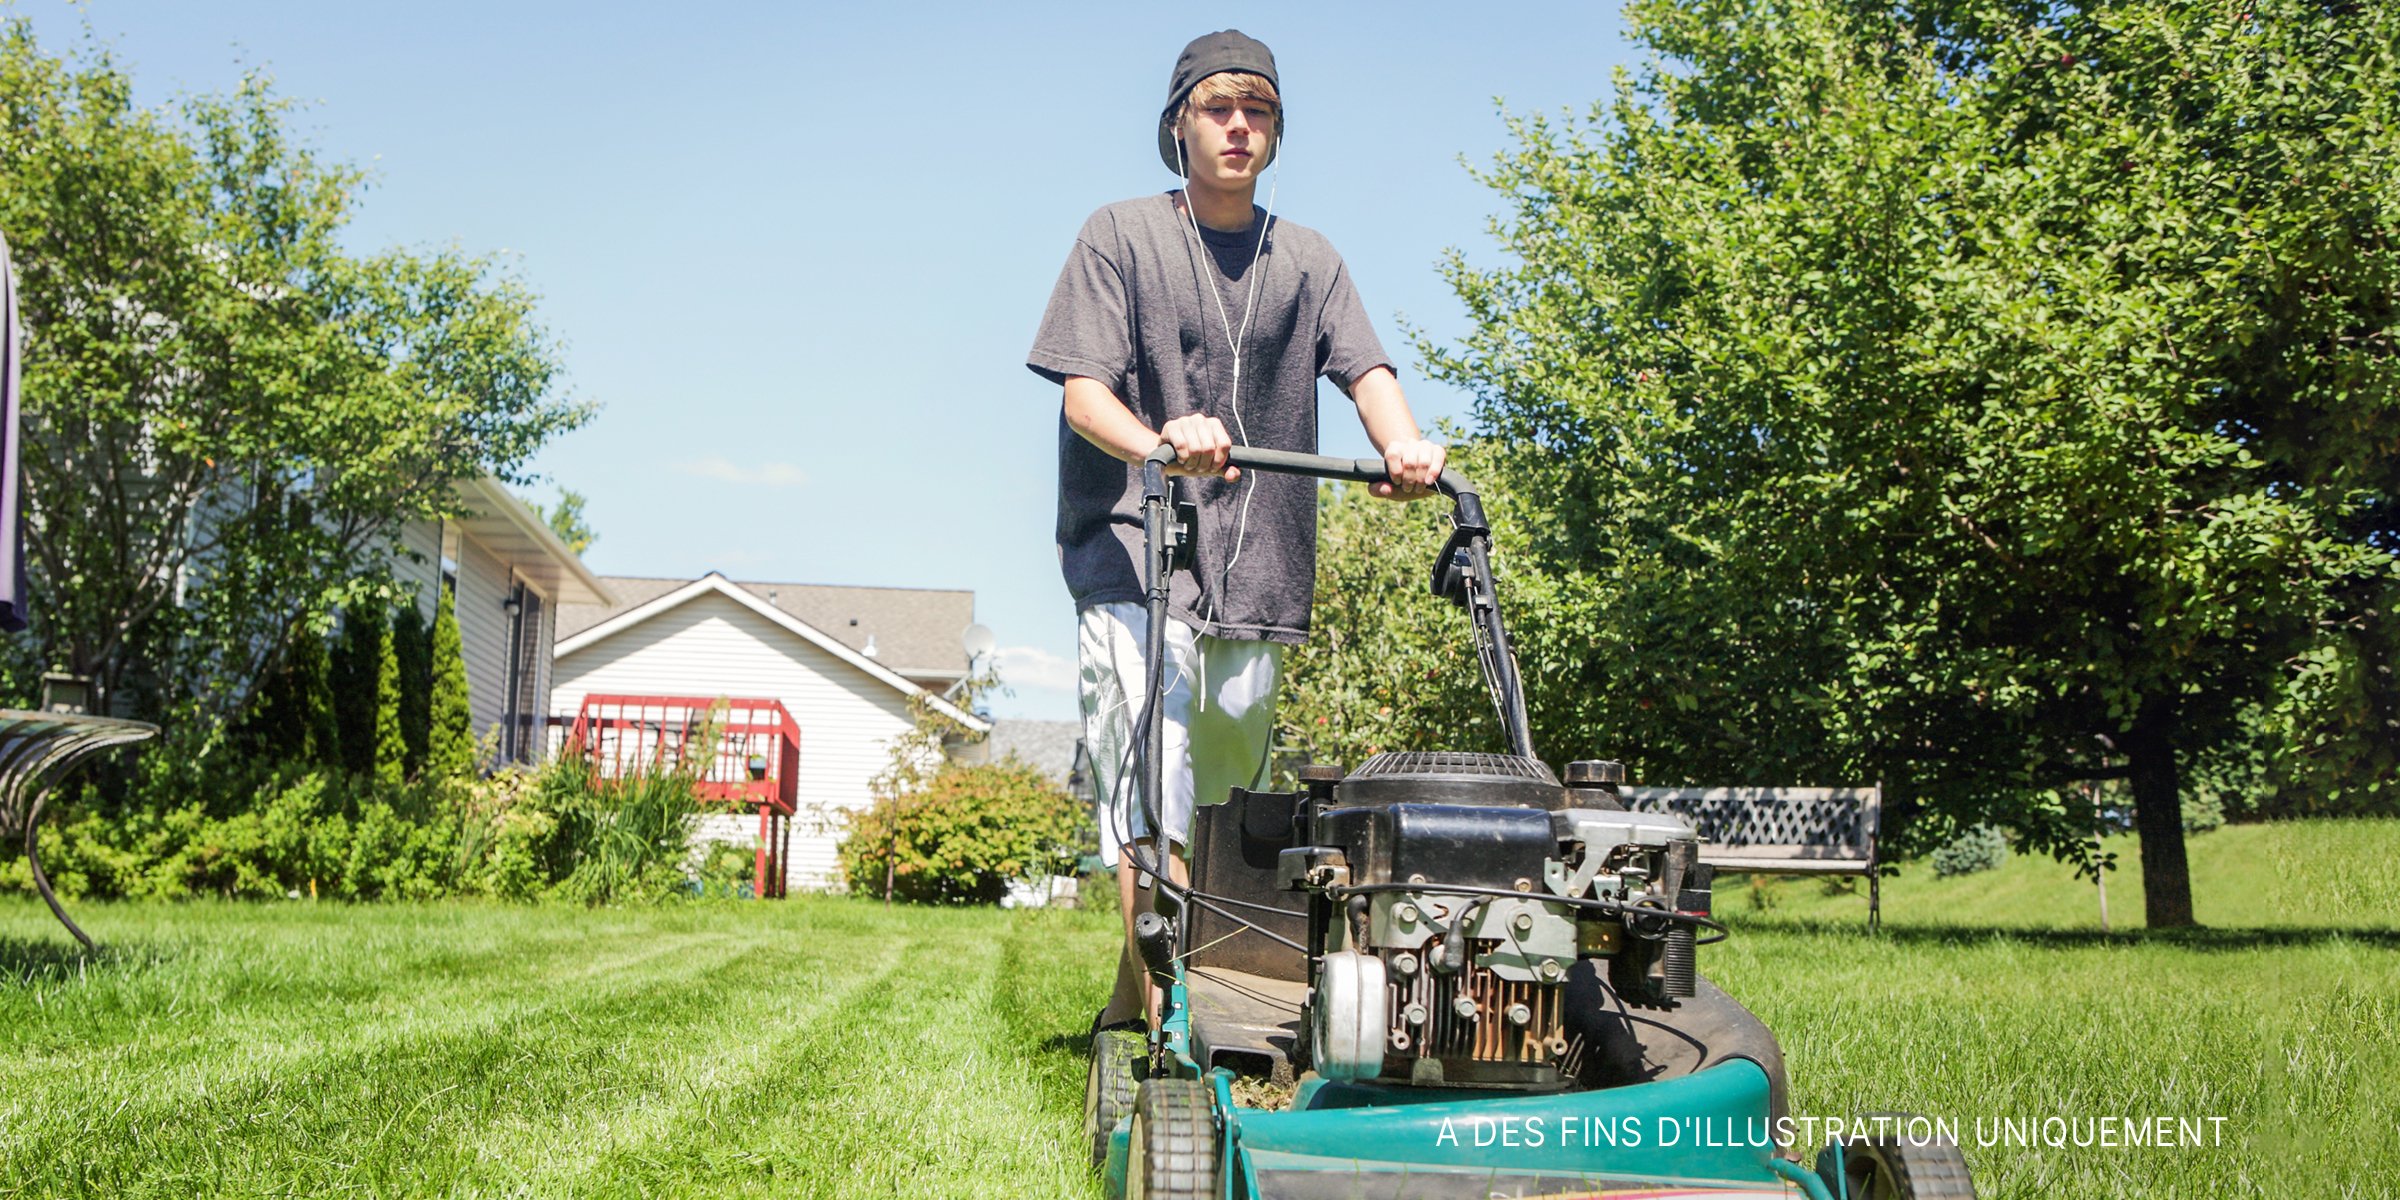 Un adolescent tondant la pelouse | Source : Shutterstock